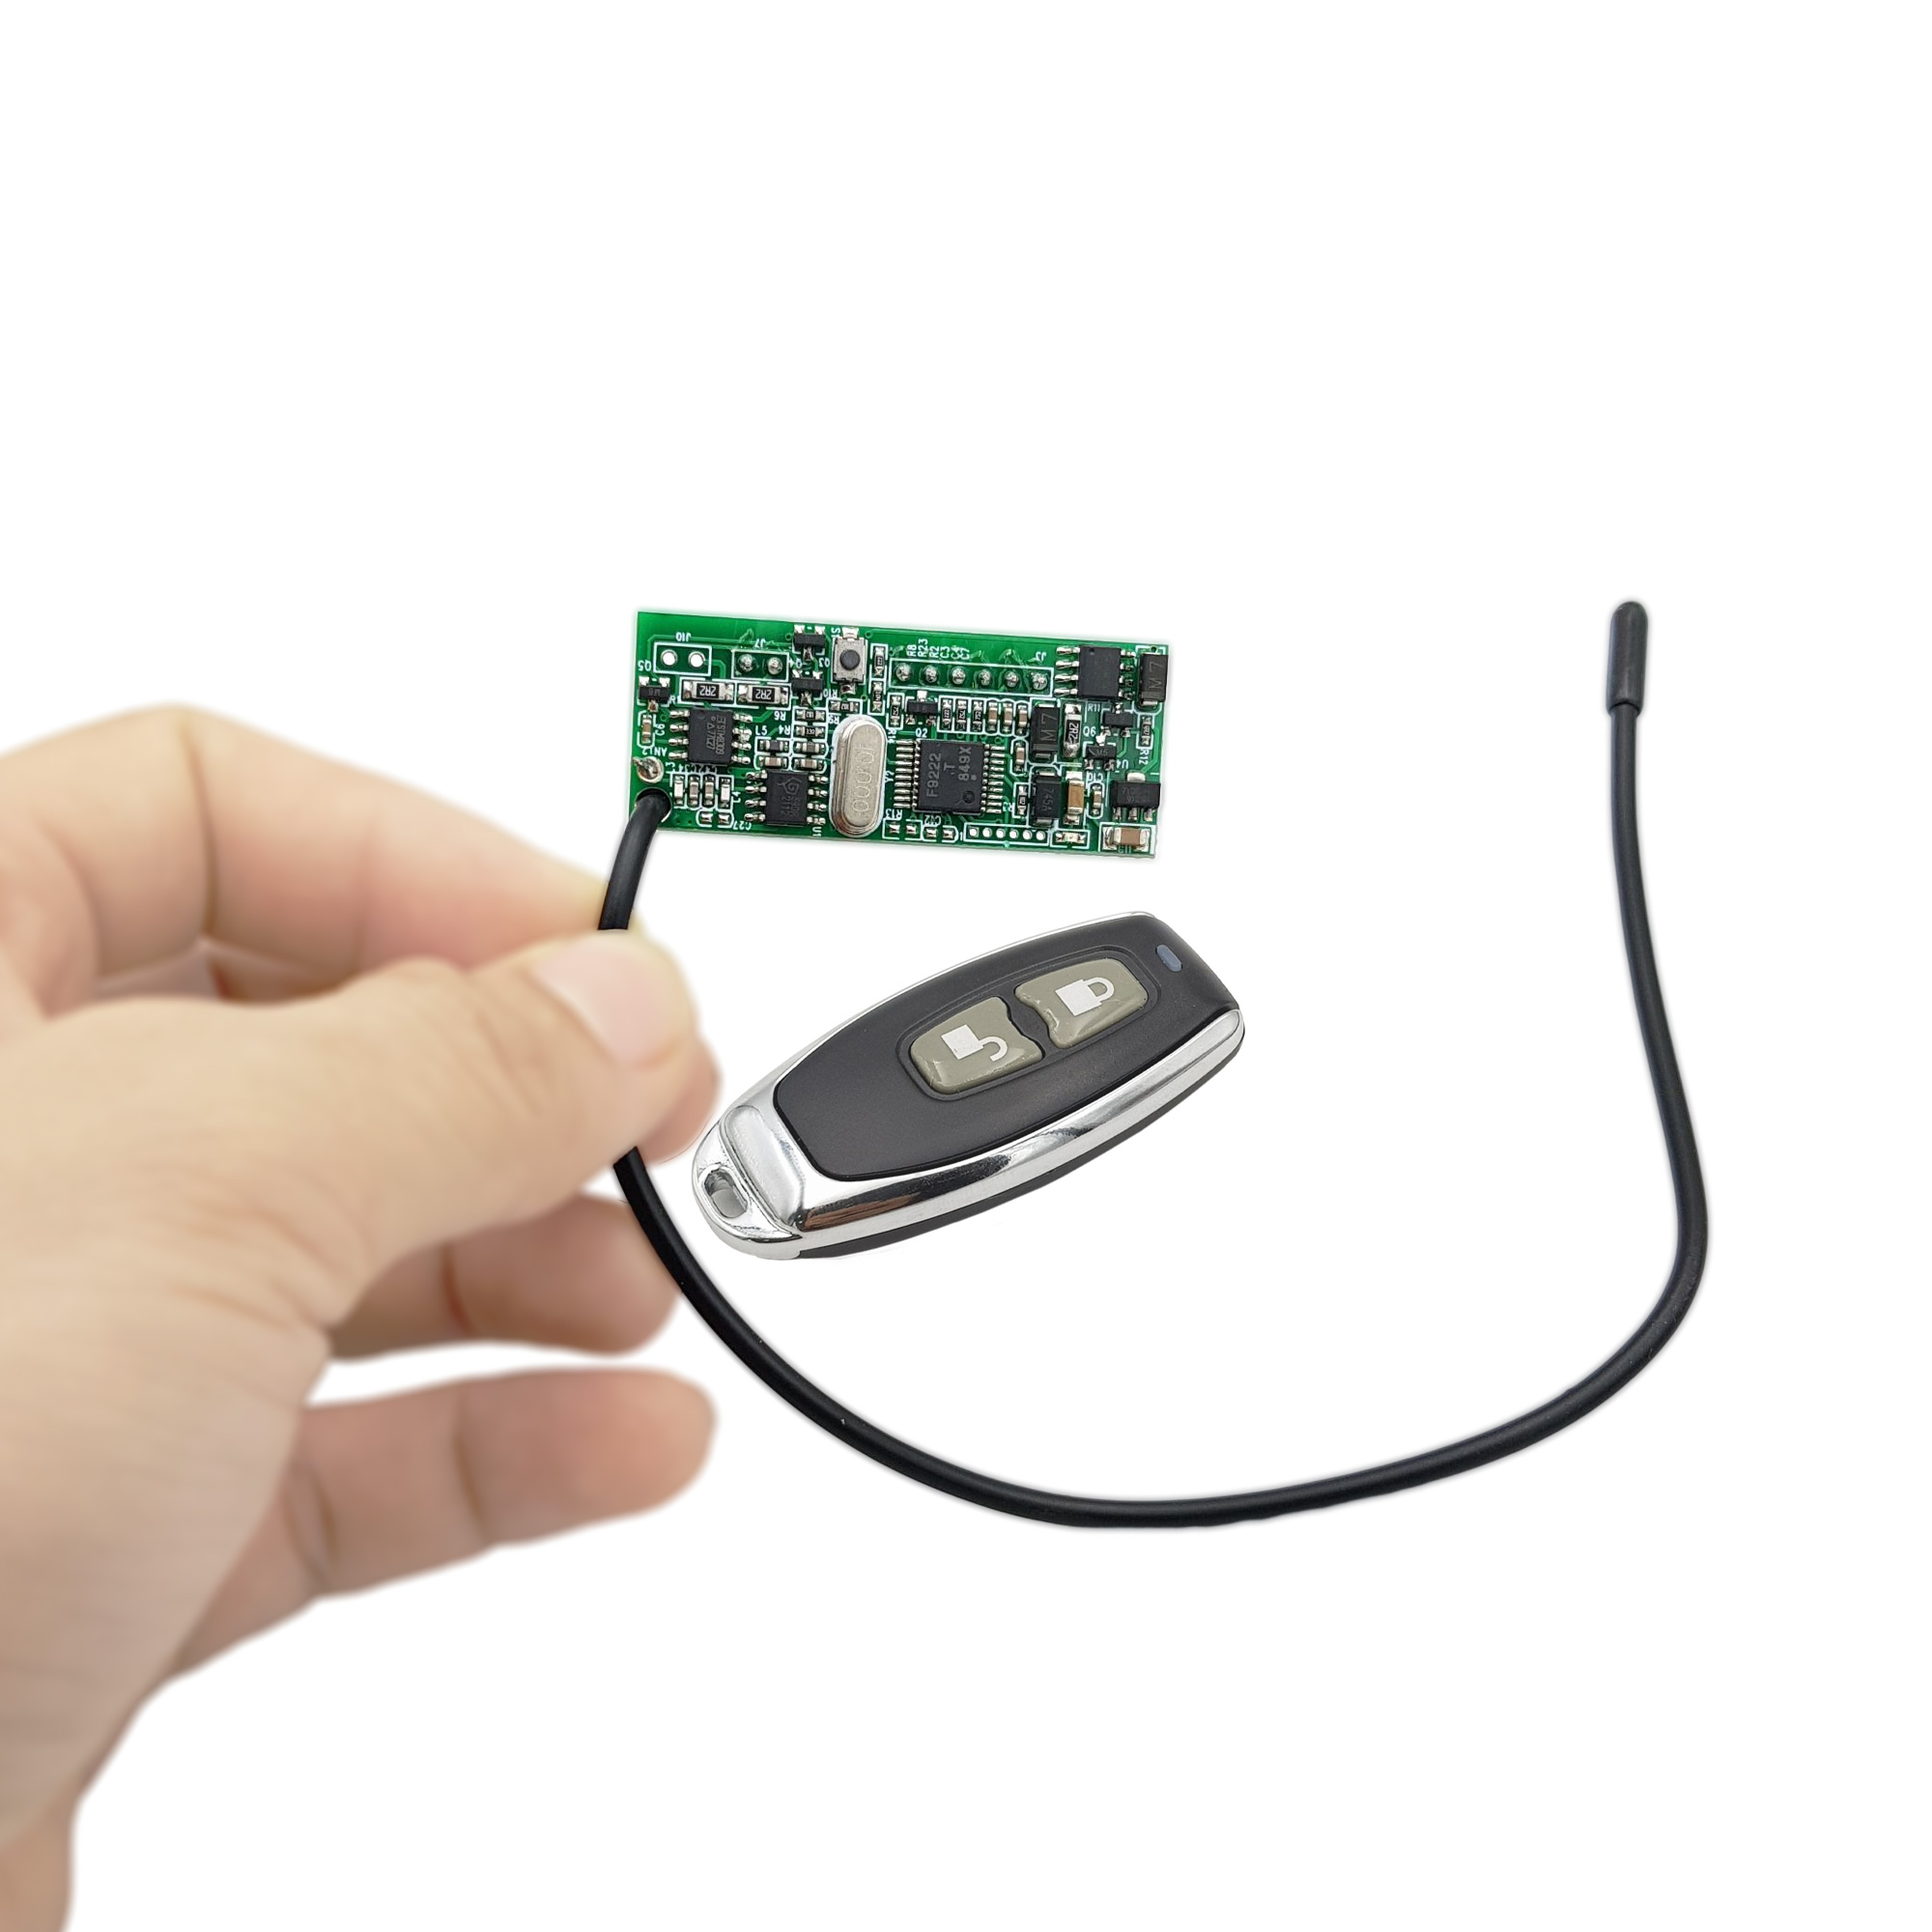 Trên tay mạch SmartKey tự động nhận diện Remote